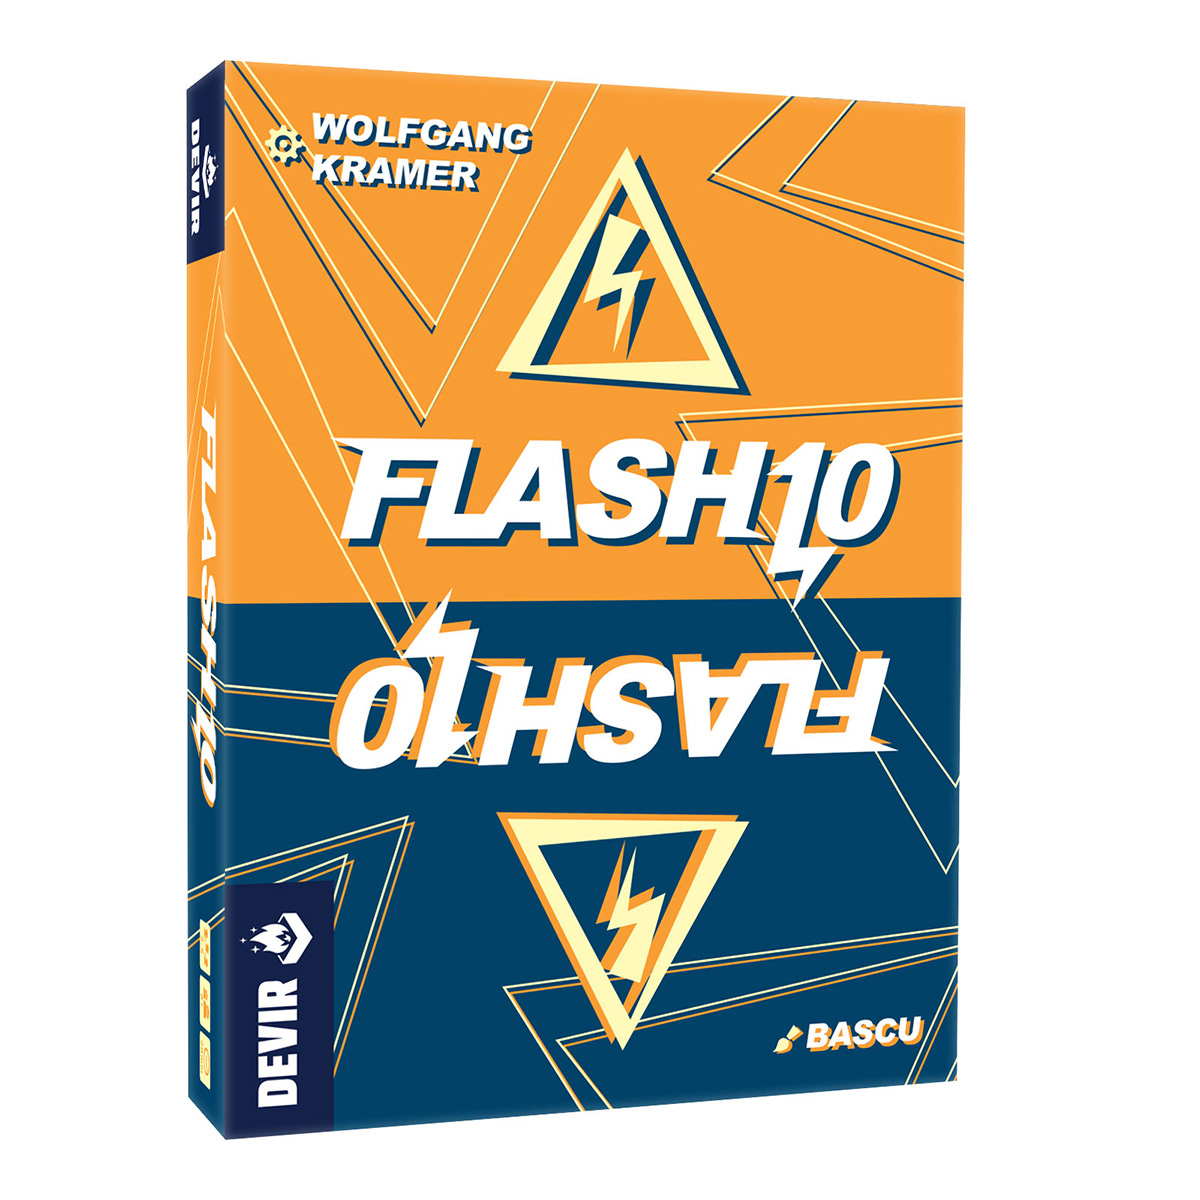 Flash 10, un juegos rápido y emocionante de 2 a 5 jugadores